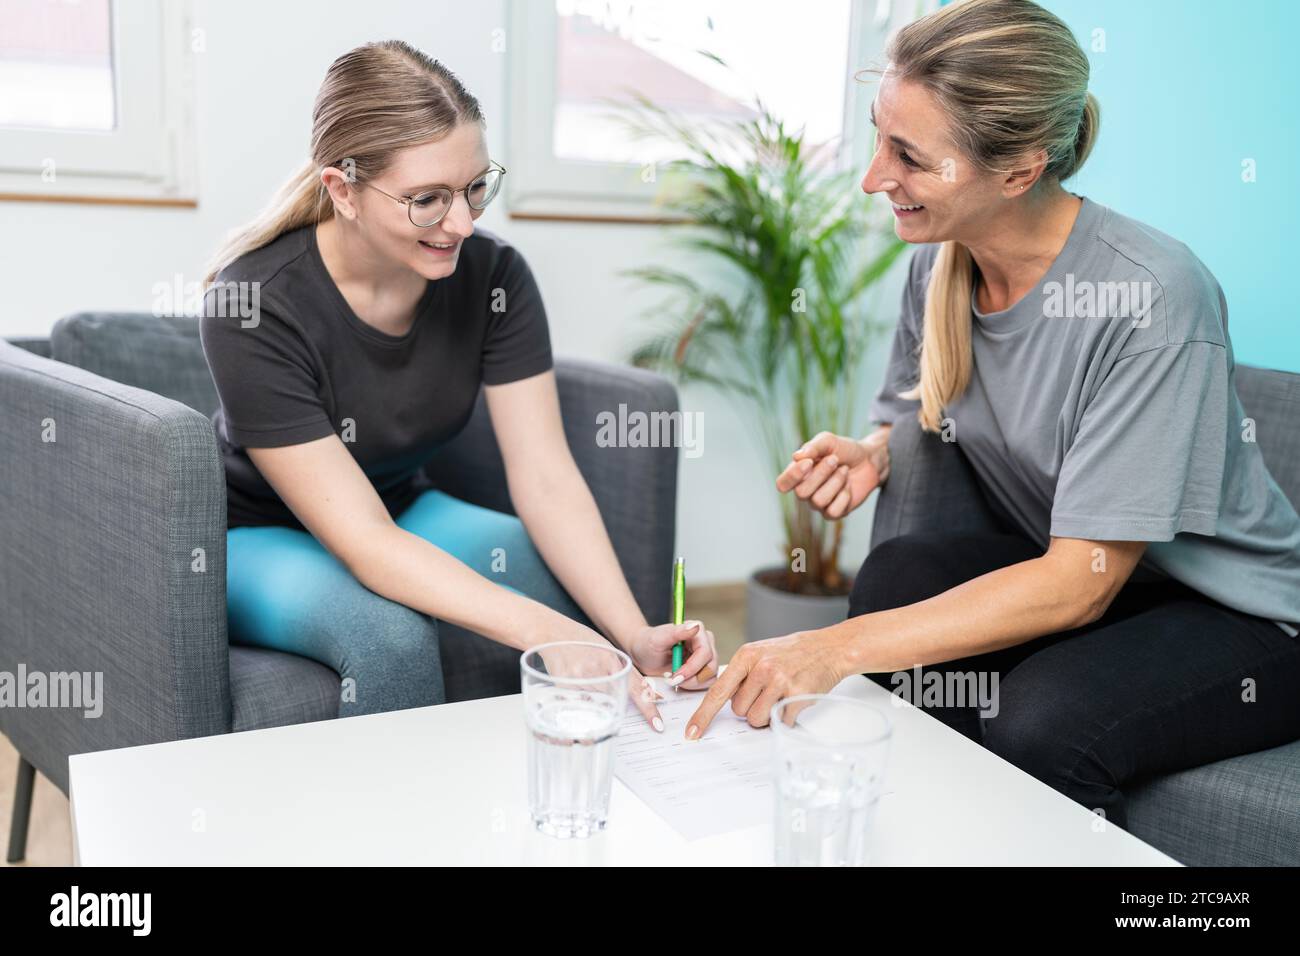 Zwei Frauen lächeln und unterhalten sich mit einer auf einem Formular in einem gut beleuchteten Therapieraum Stockfoto